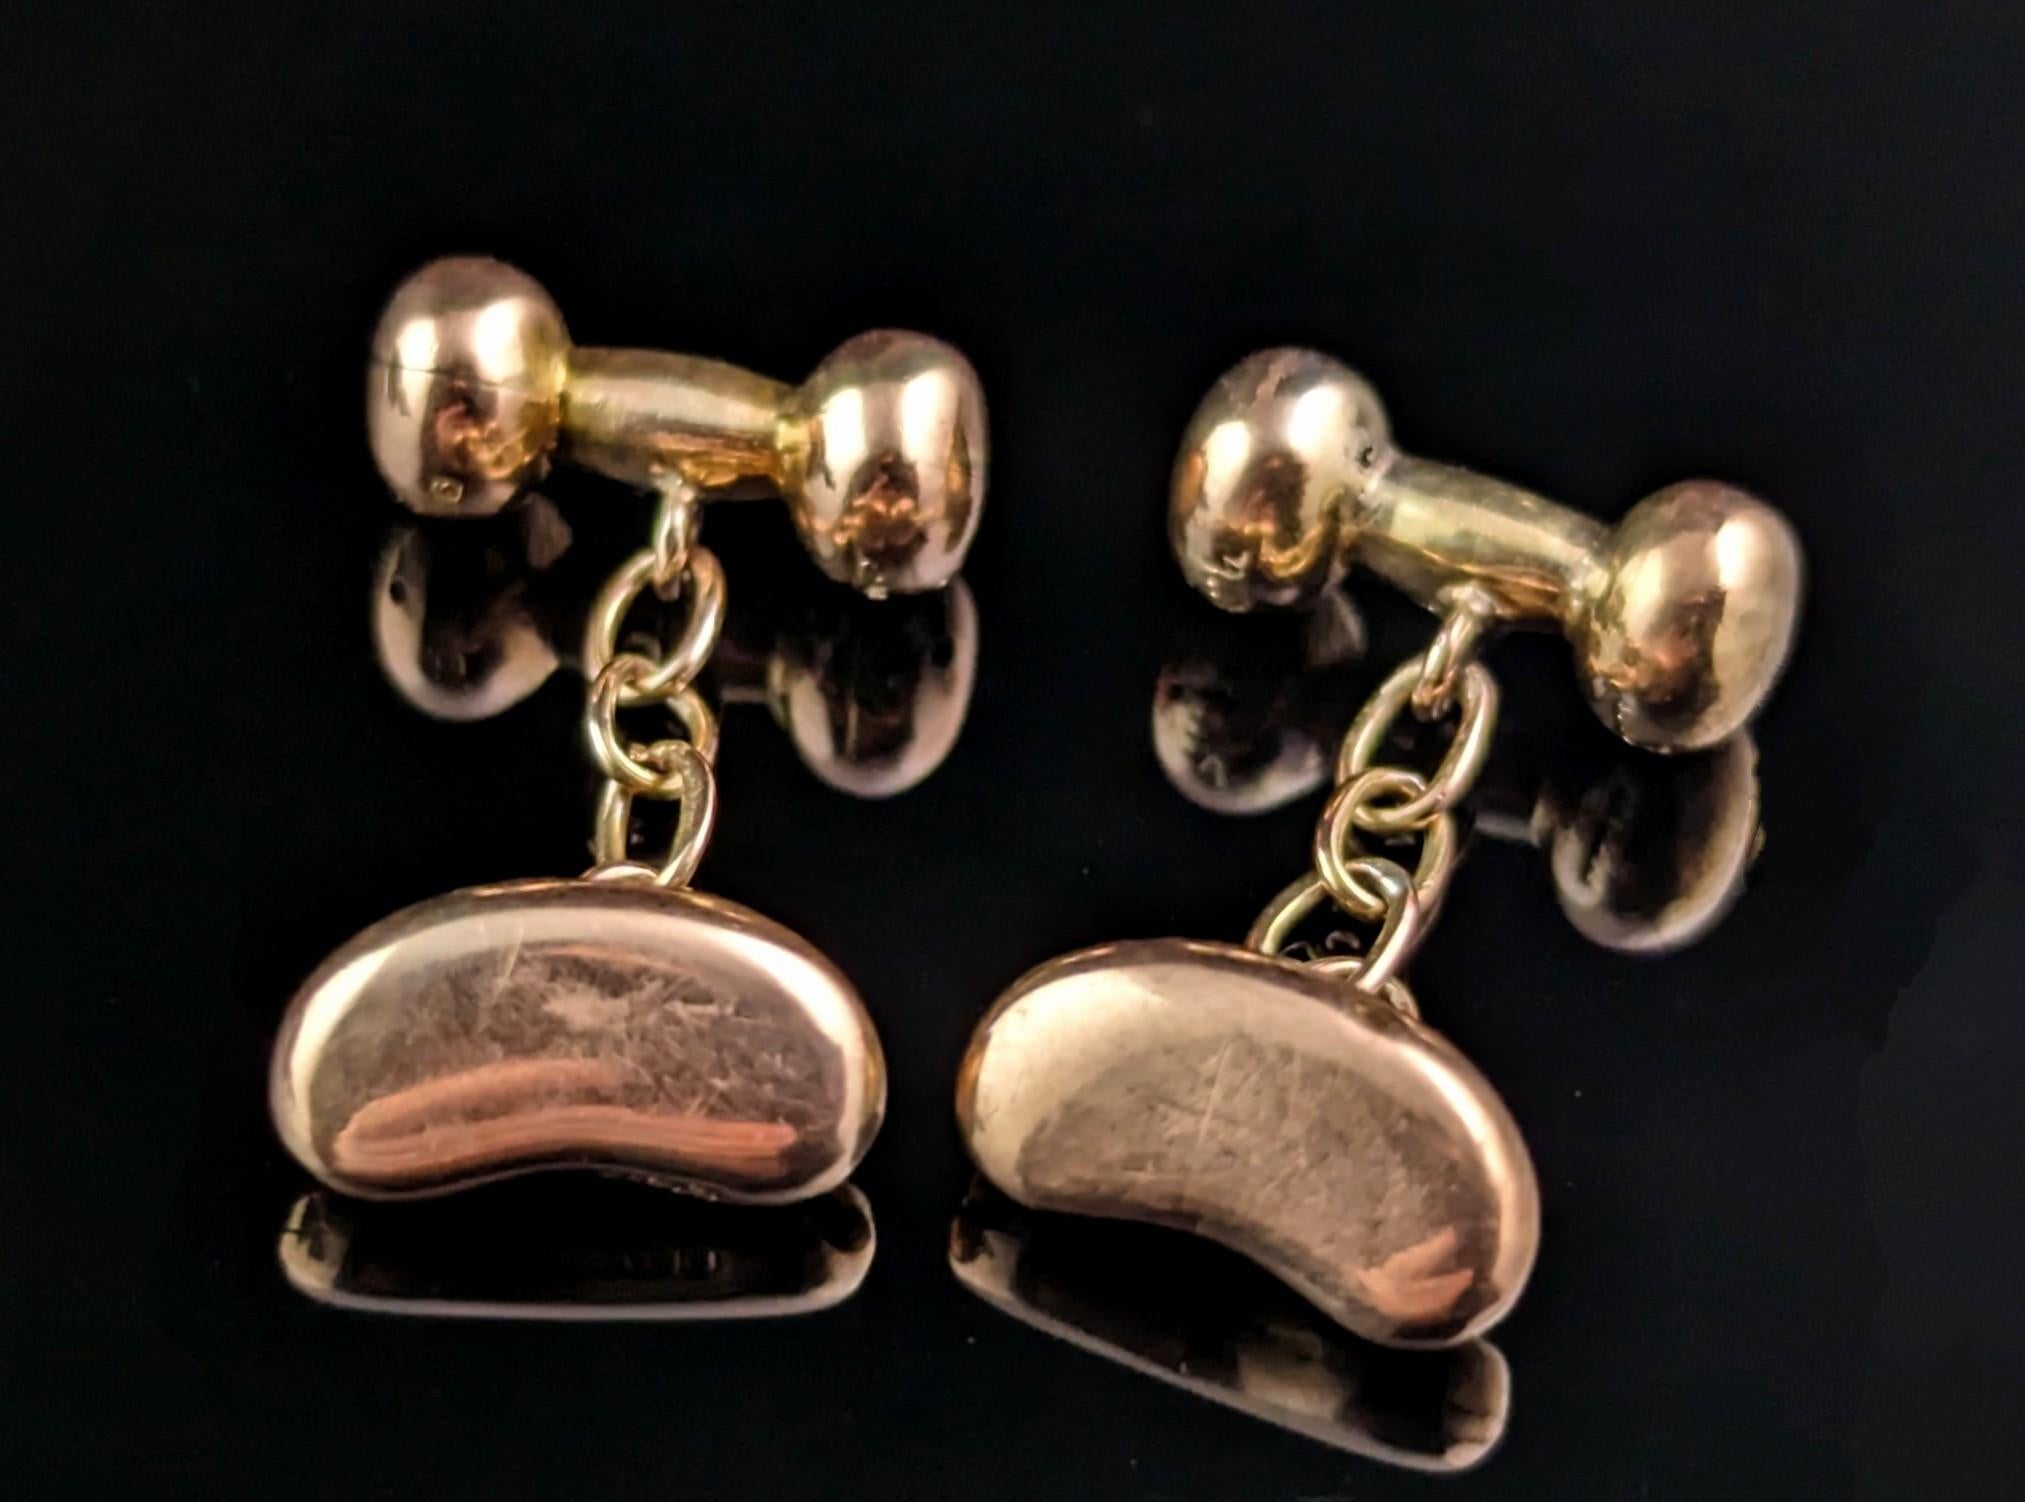 Ein fantastisches Paar von antiken Edwardian Ära 9ct Rose Gold Glücksbohne Manschettenknöpfe.

An einem Ende befindet sich eine modellierte Glücksbohne aus Roségold, die mit einer kurzen Goldkette an einem Kugelanker befestigt ist.

Die